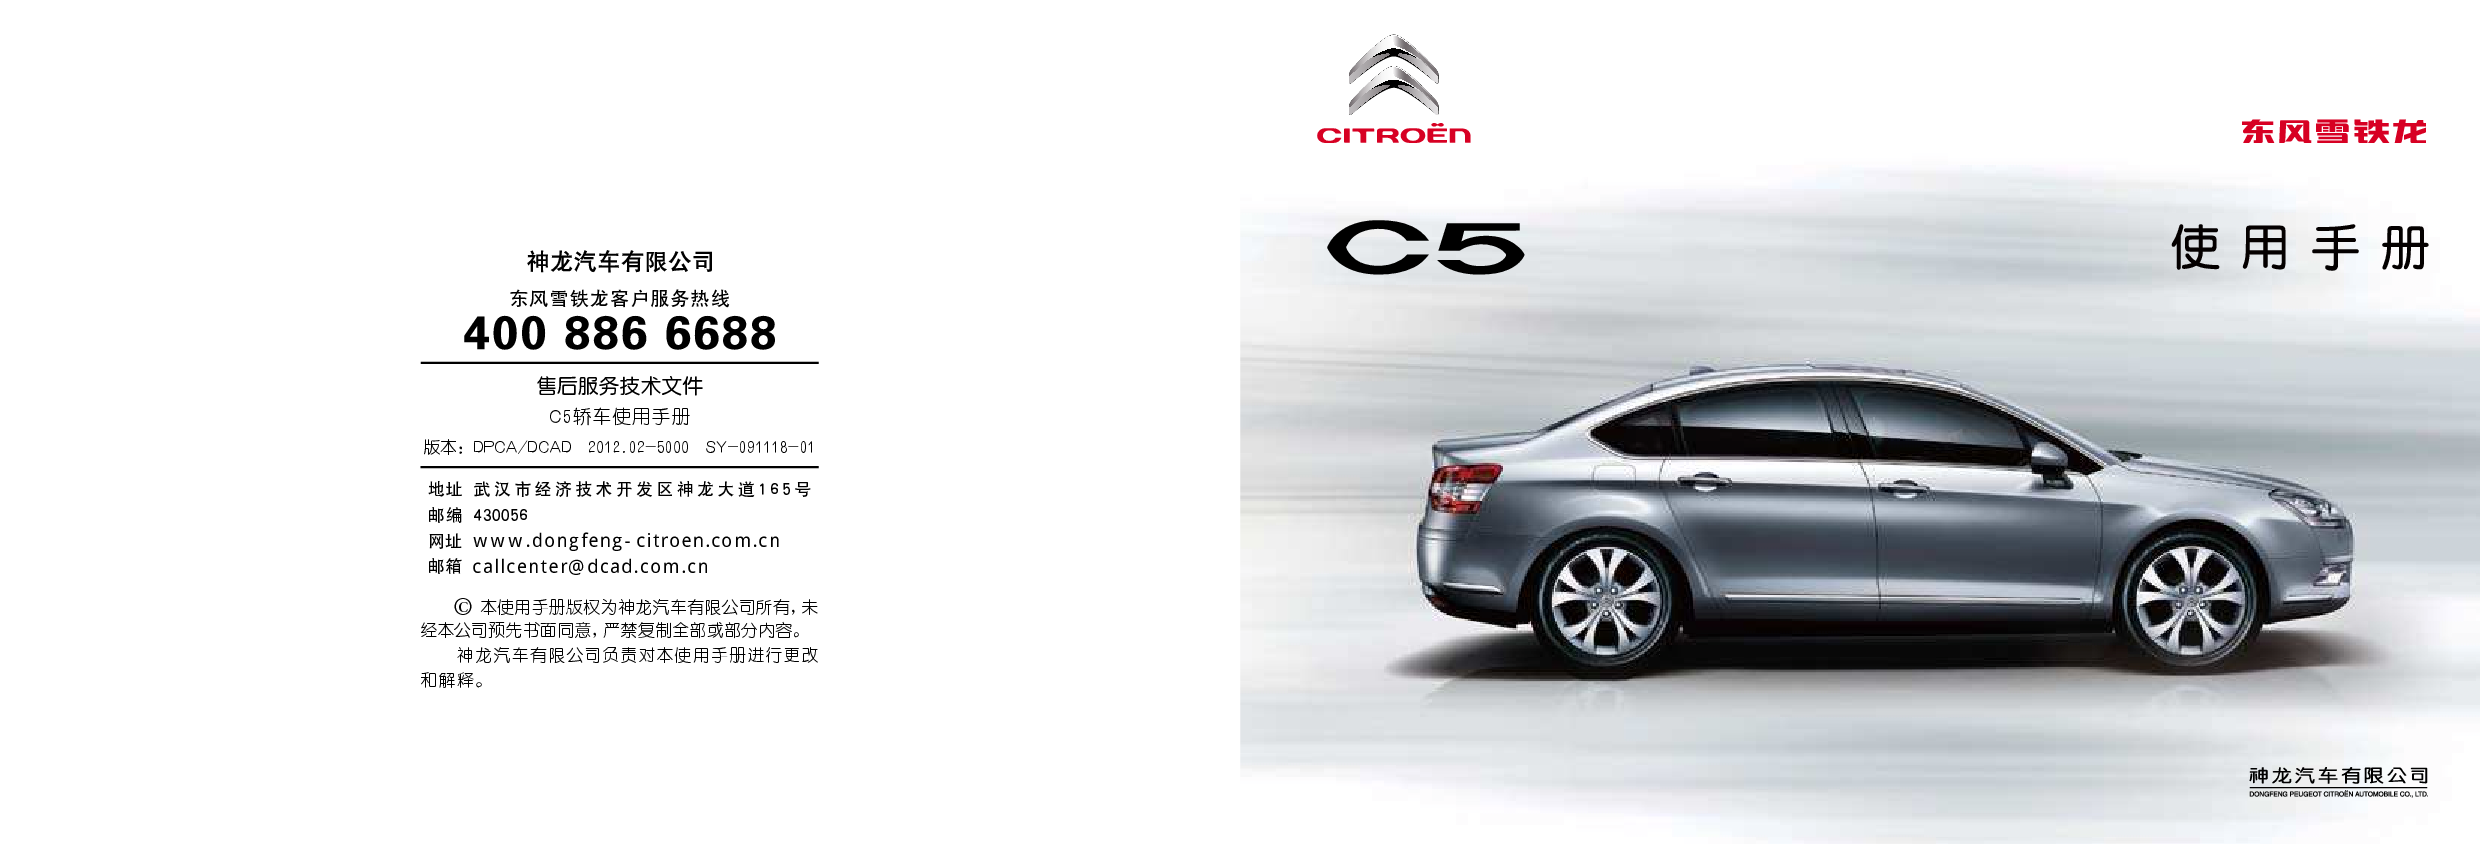 雪铁龙 Citroen C5 2012 用户手册 封面